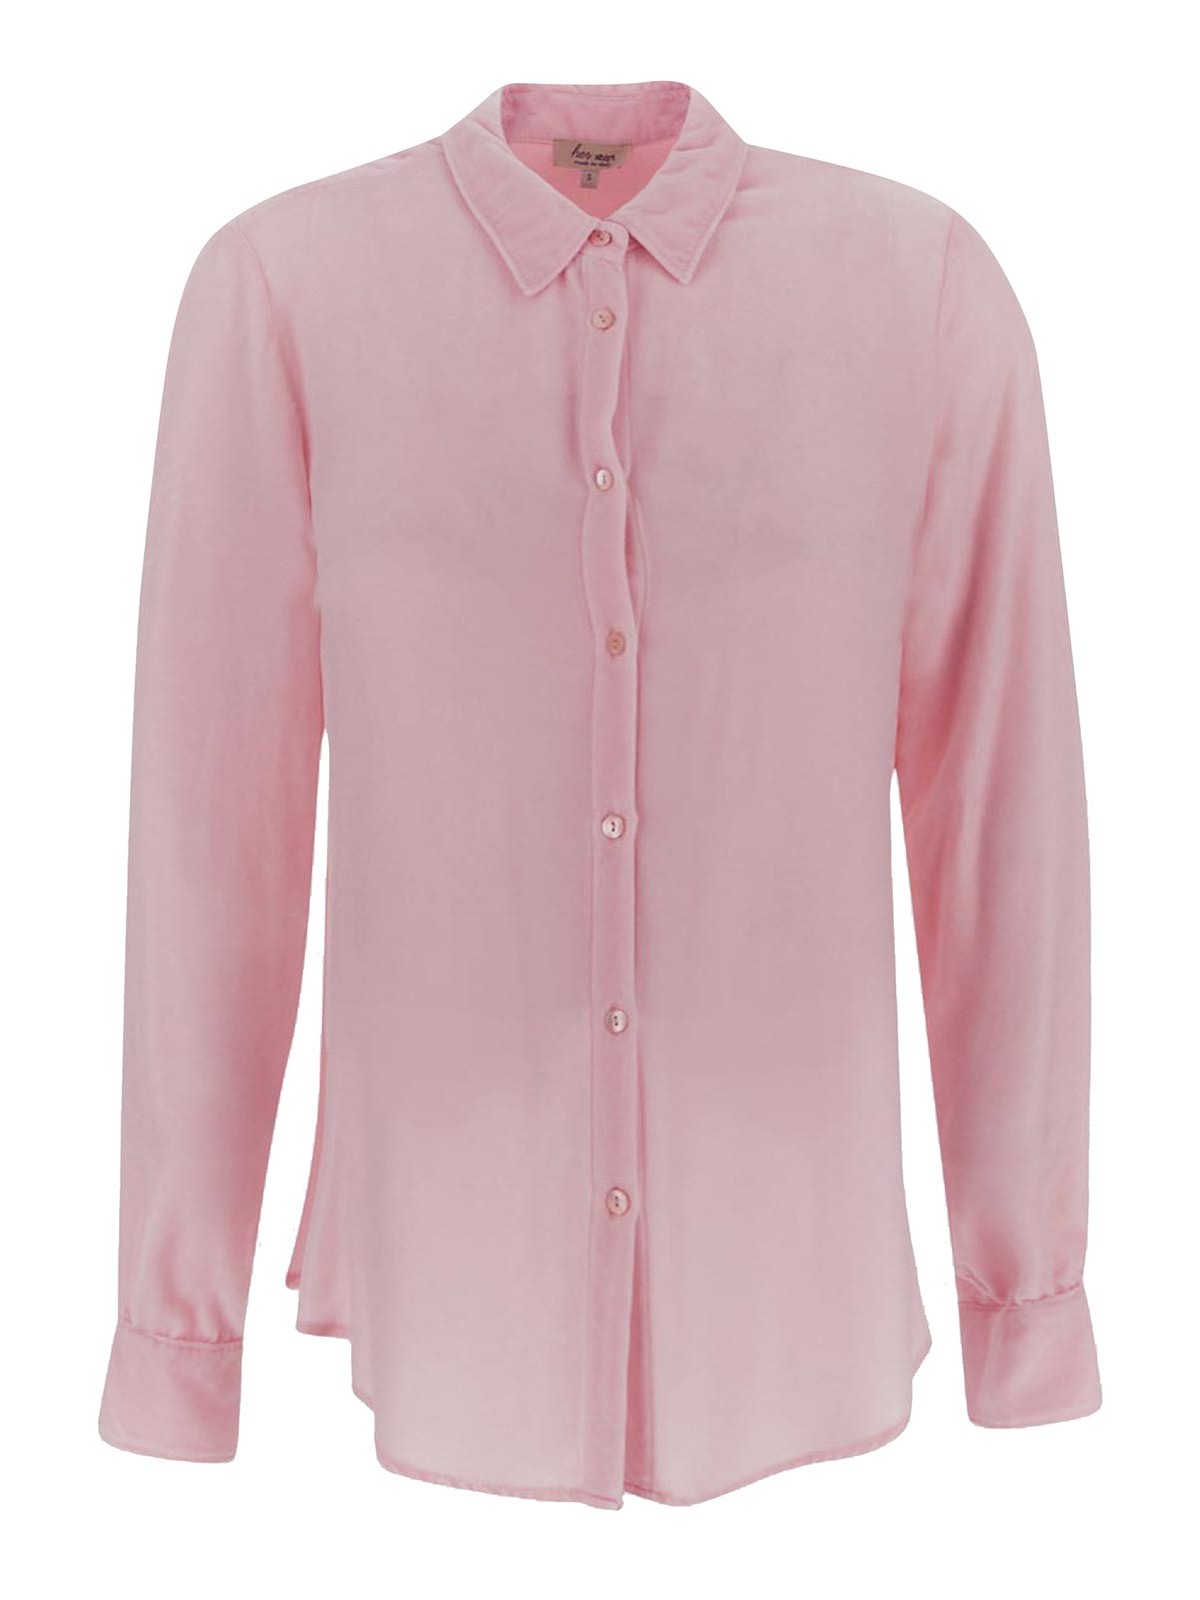 Her Shirt - Her Dress Shirt In Pink